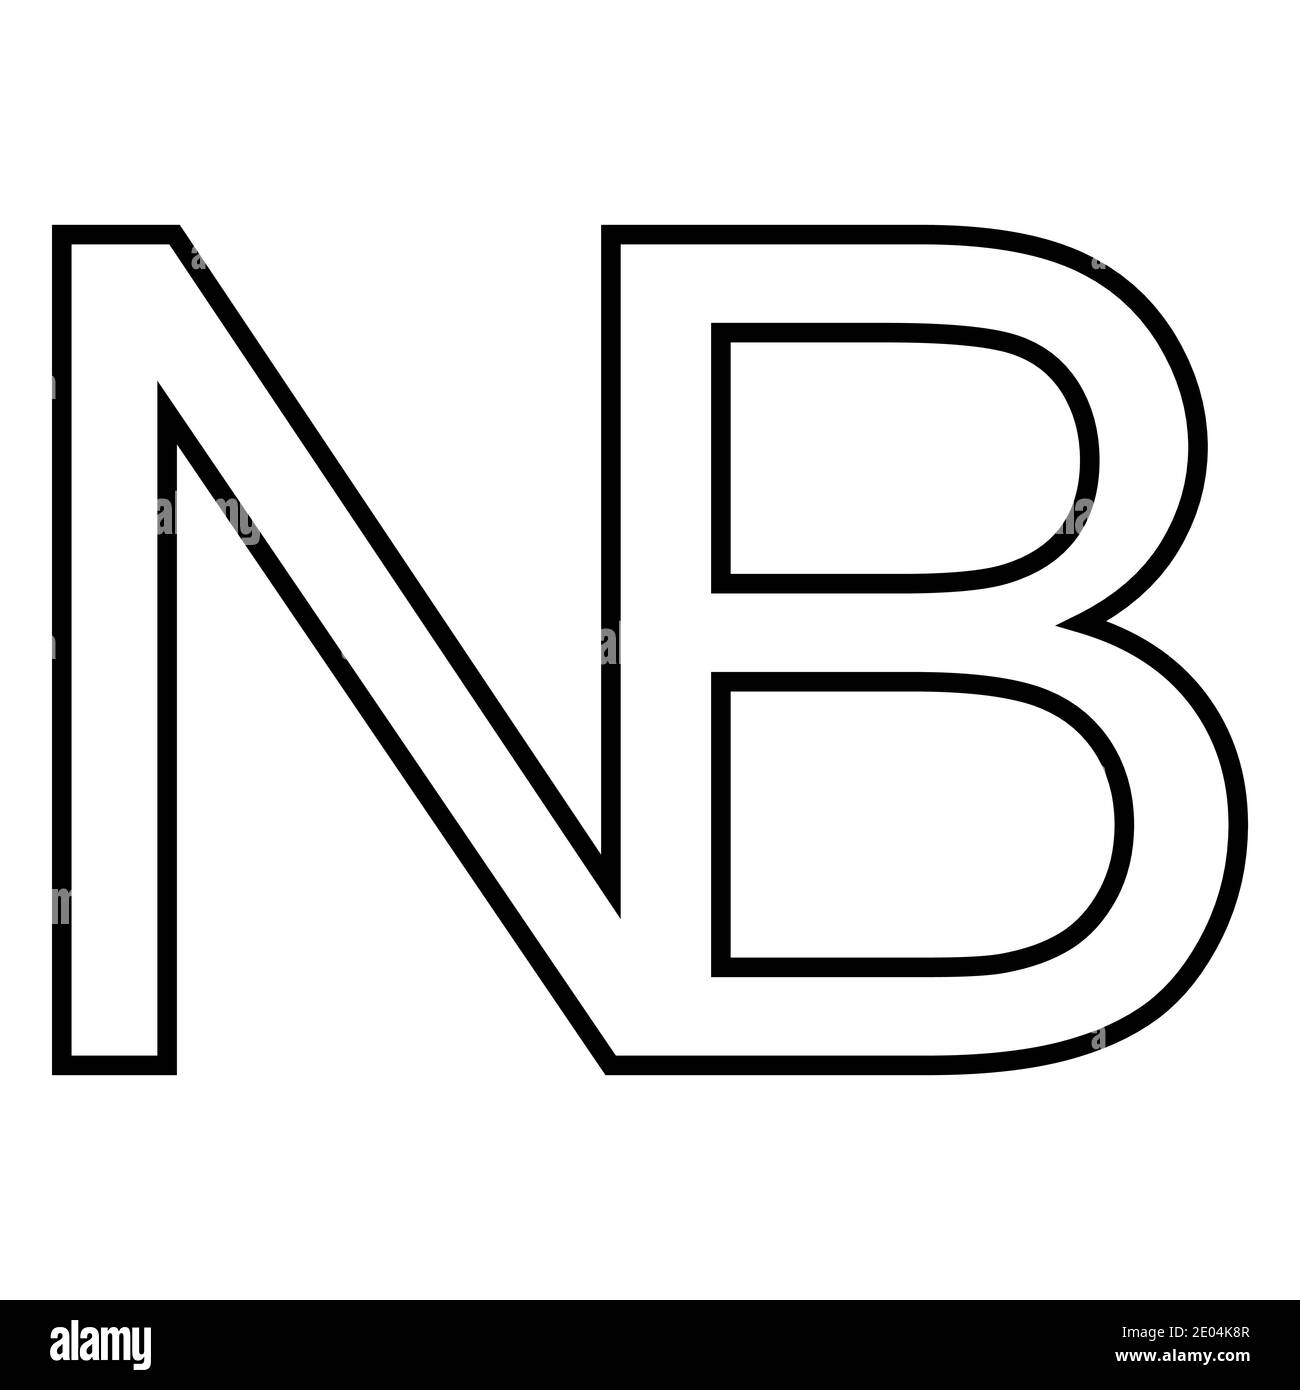 Symbolzeichen Nota Bene, Vektor Nota Bene, N, B NB, notabene Marke, Hinweis, um auf einen beliebigen Teiletext zu achten Stock Vektor